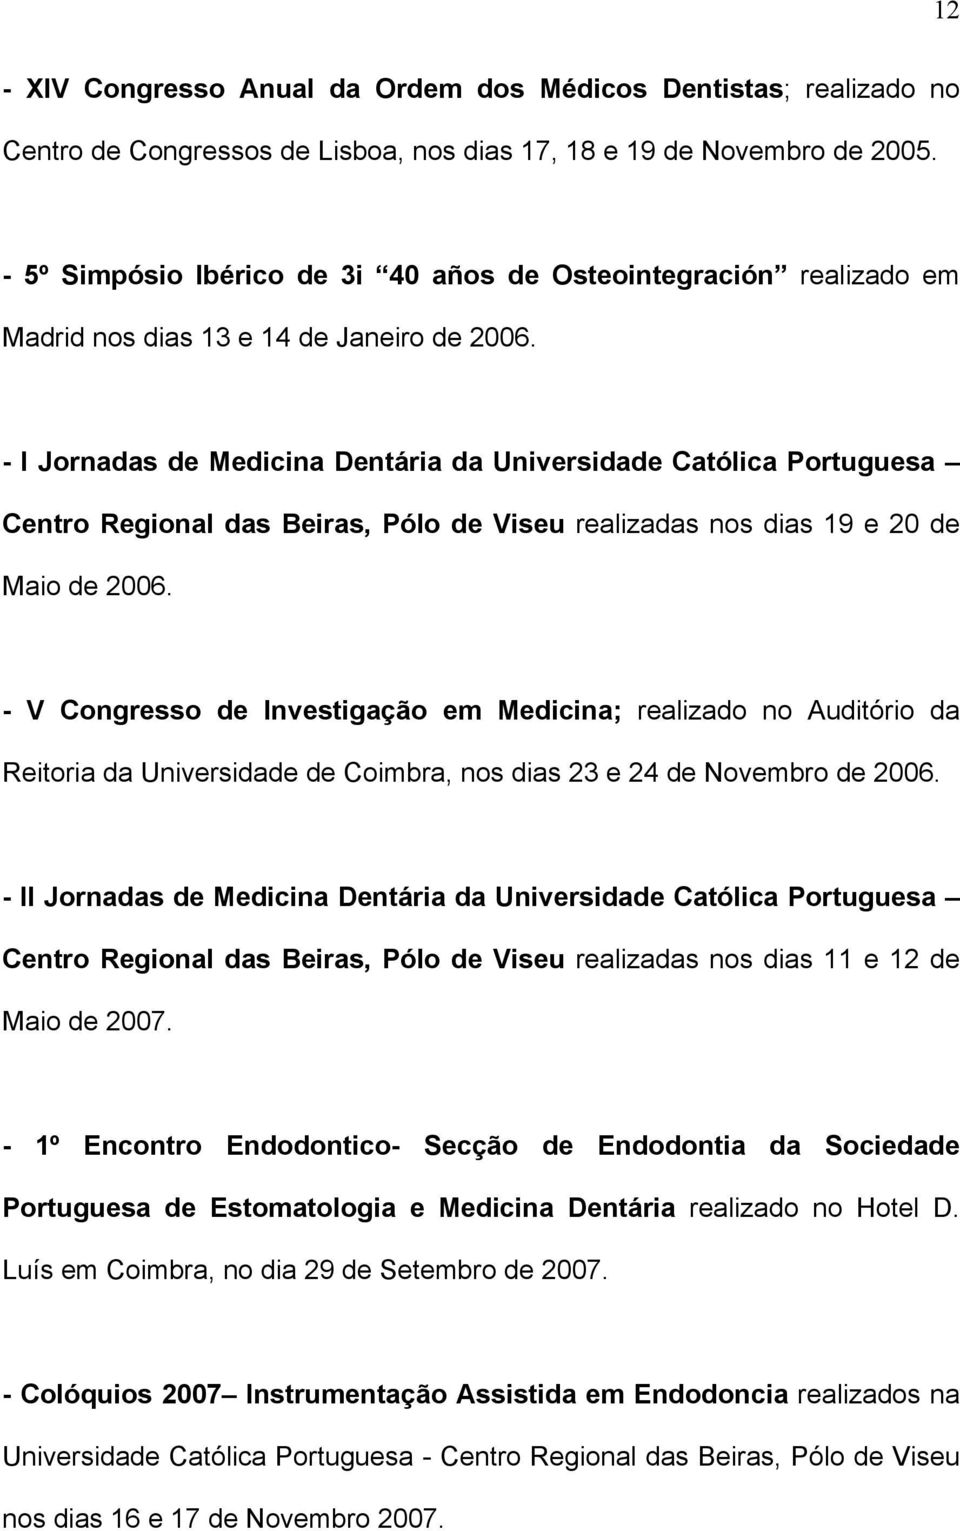 - I Jornadas de Medicina Dentária da Universidade Católica Portuguesa Centro Regional das Beiras, Pólo de Viseu realizadas nos dias 19 e 20 de Maio de 2006.